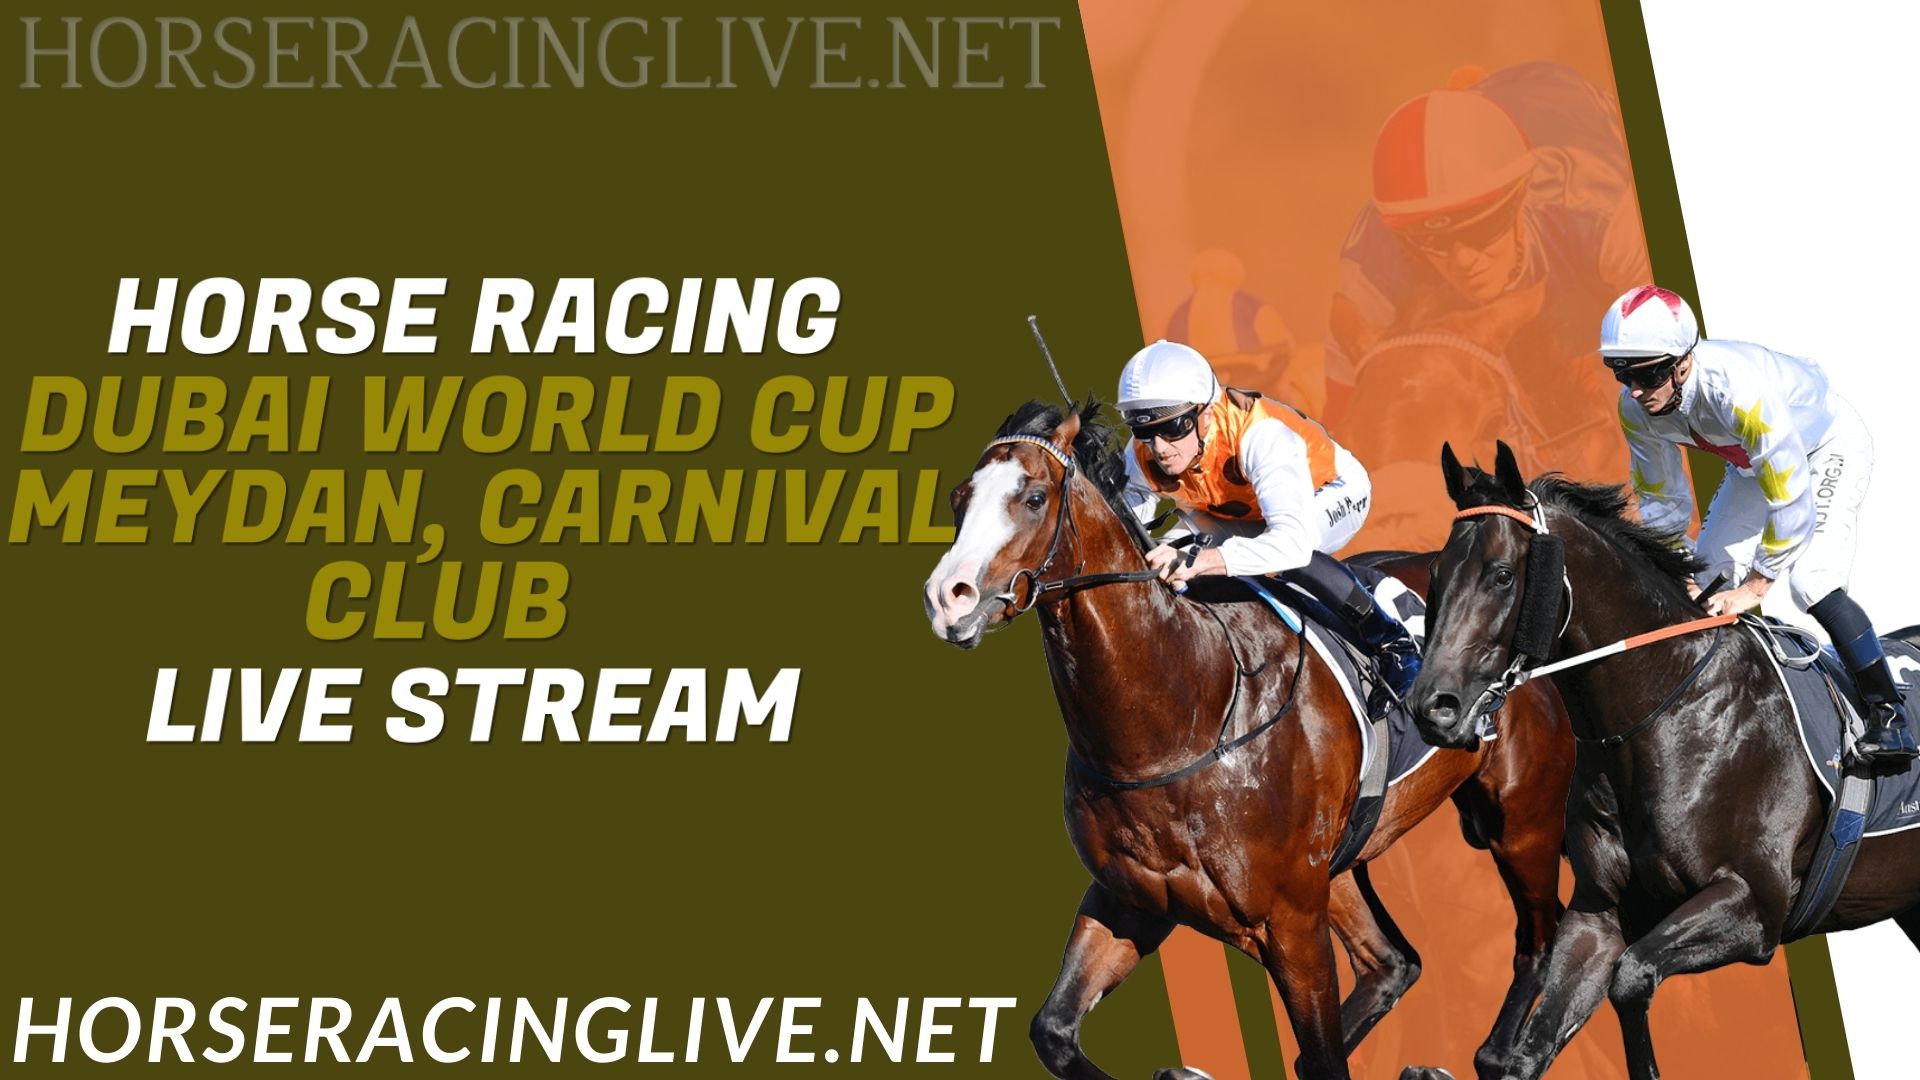 Dubai Horse Racing Live Stream